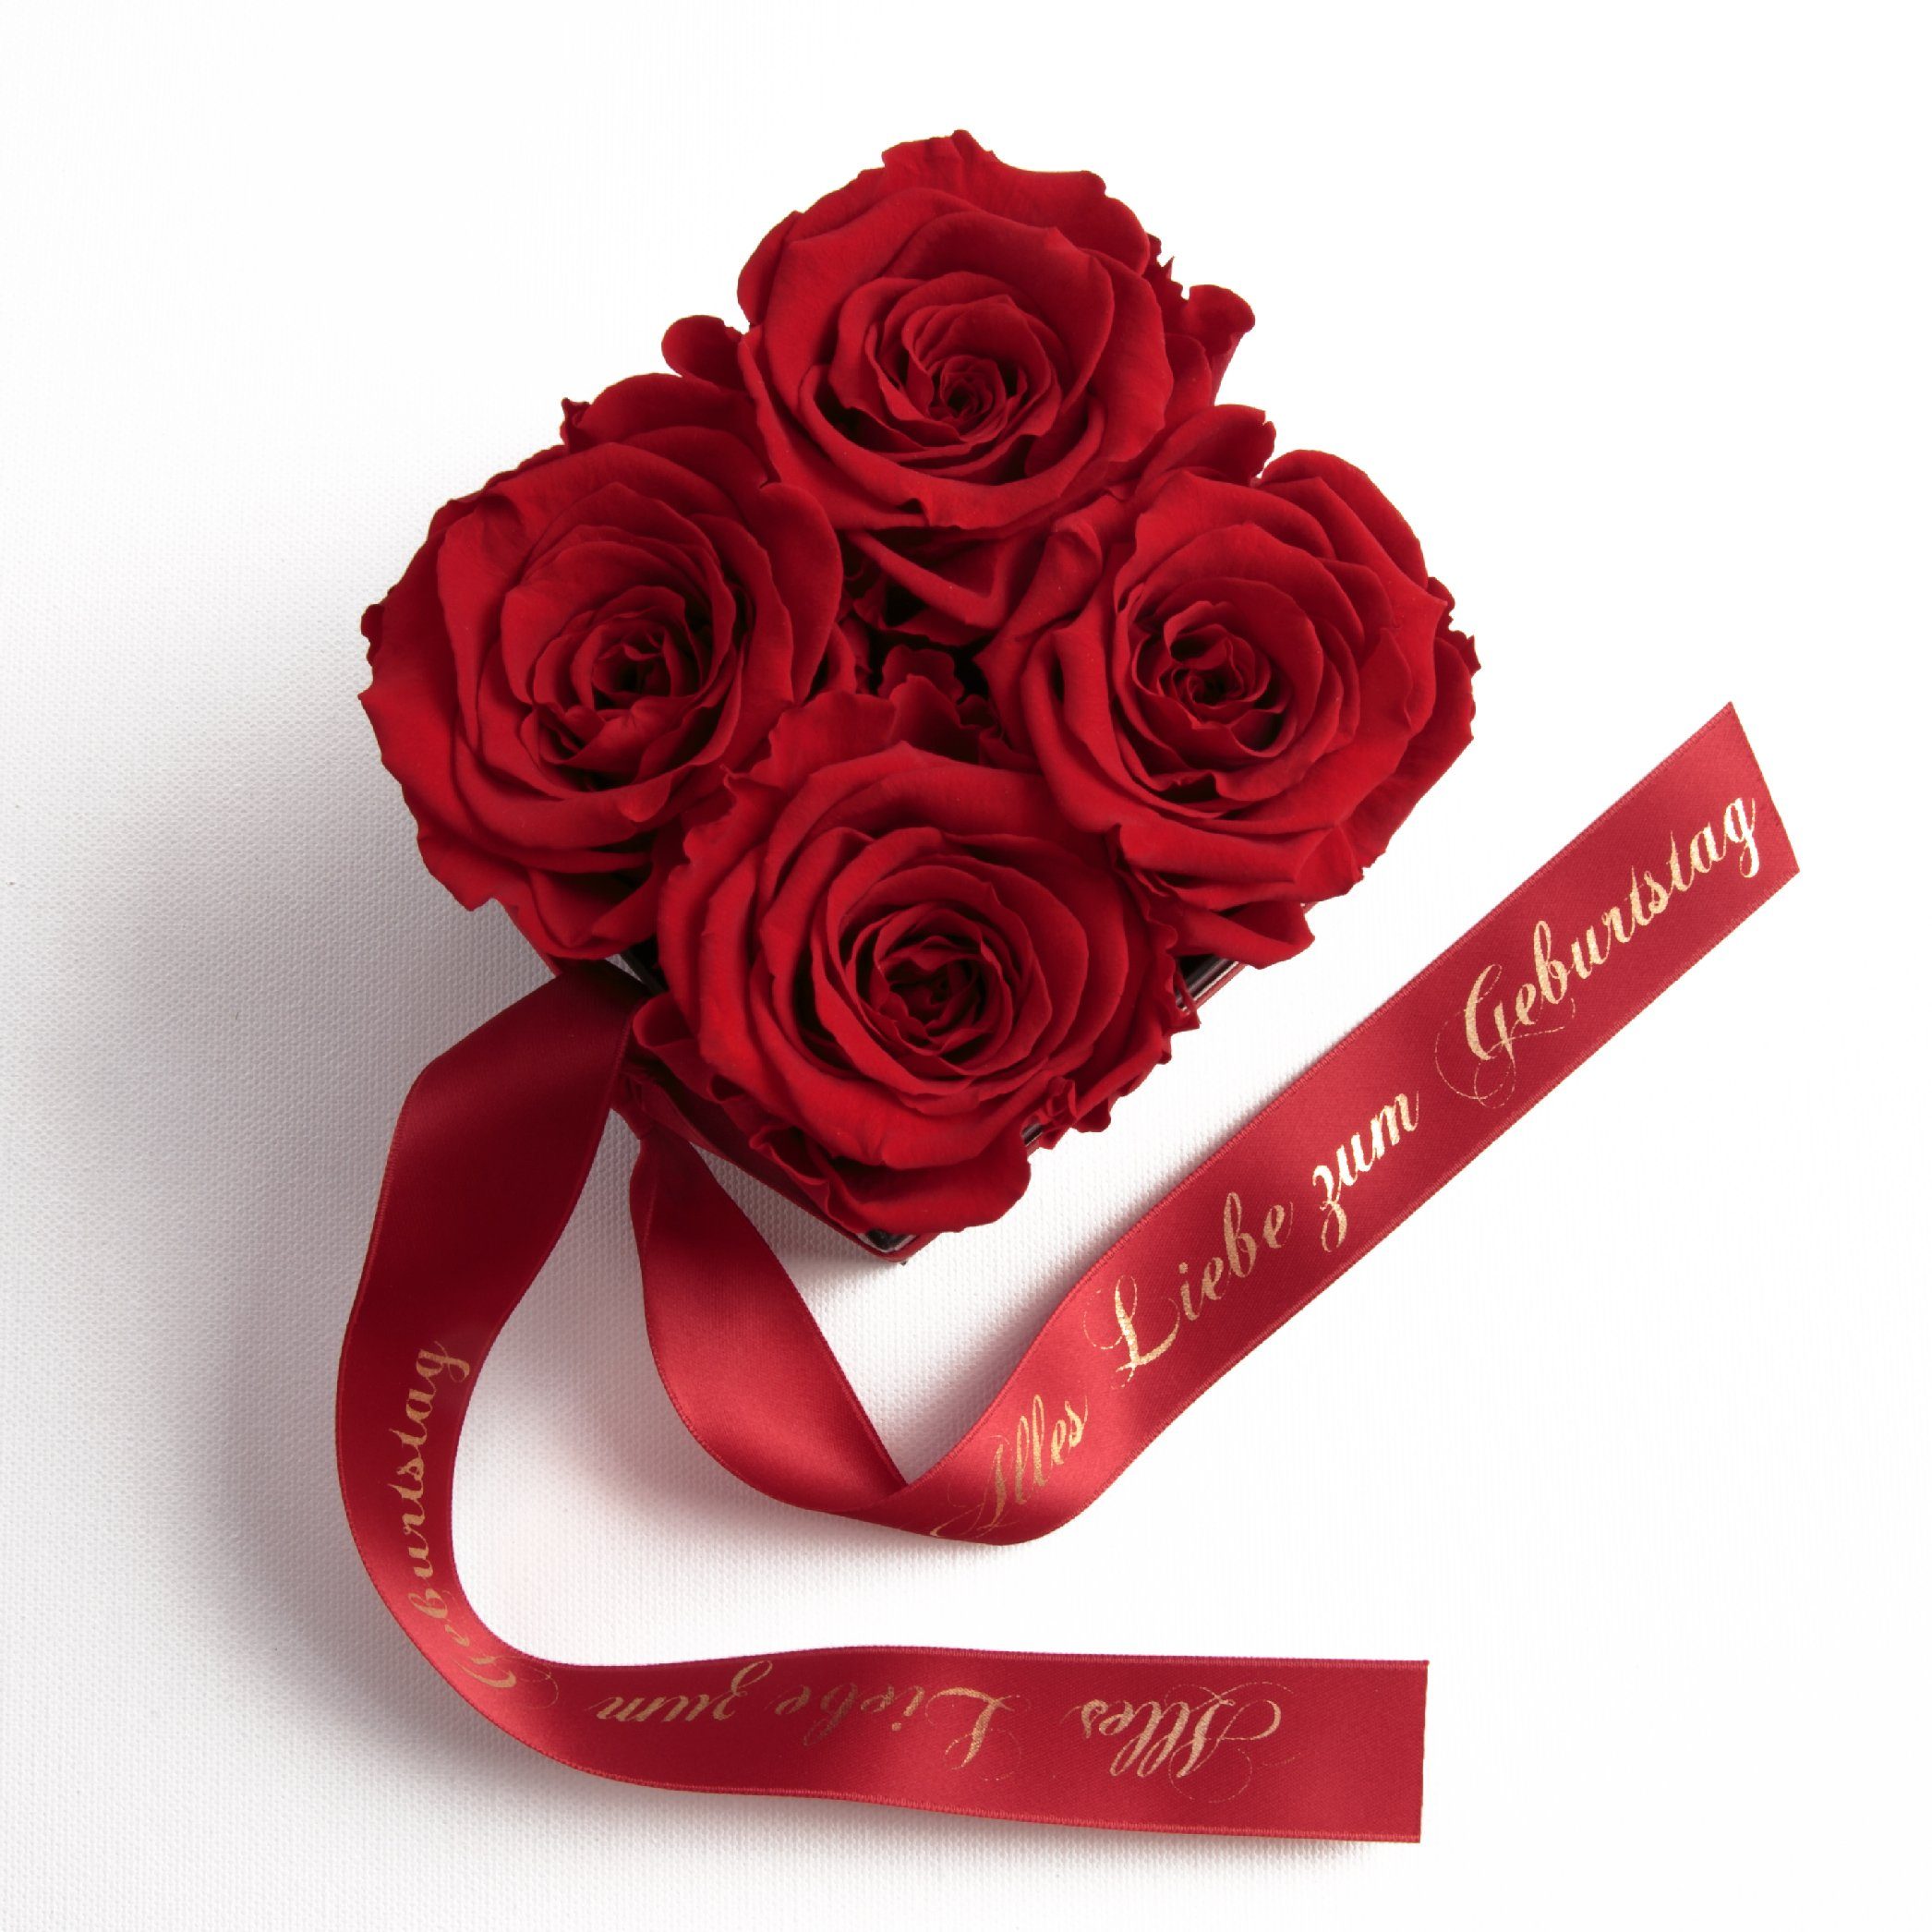 ROSEMARIE SCHULZ Heidelberg Dekoobjekt Rosenbox echte Rosen Alles Liebe zum Geburtstag Geschenk für Frauen (1 St), Echte konservierte Rosen Rot | Deko-Objekte